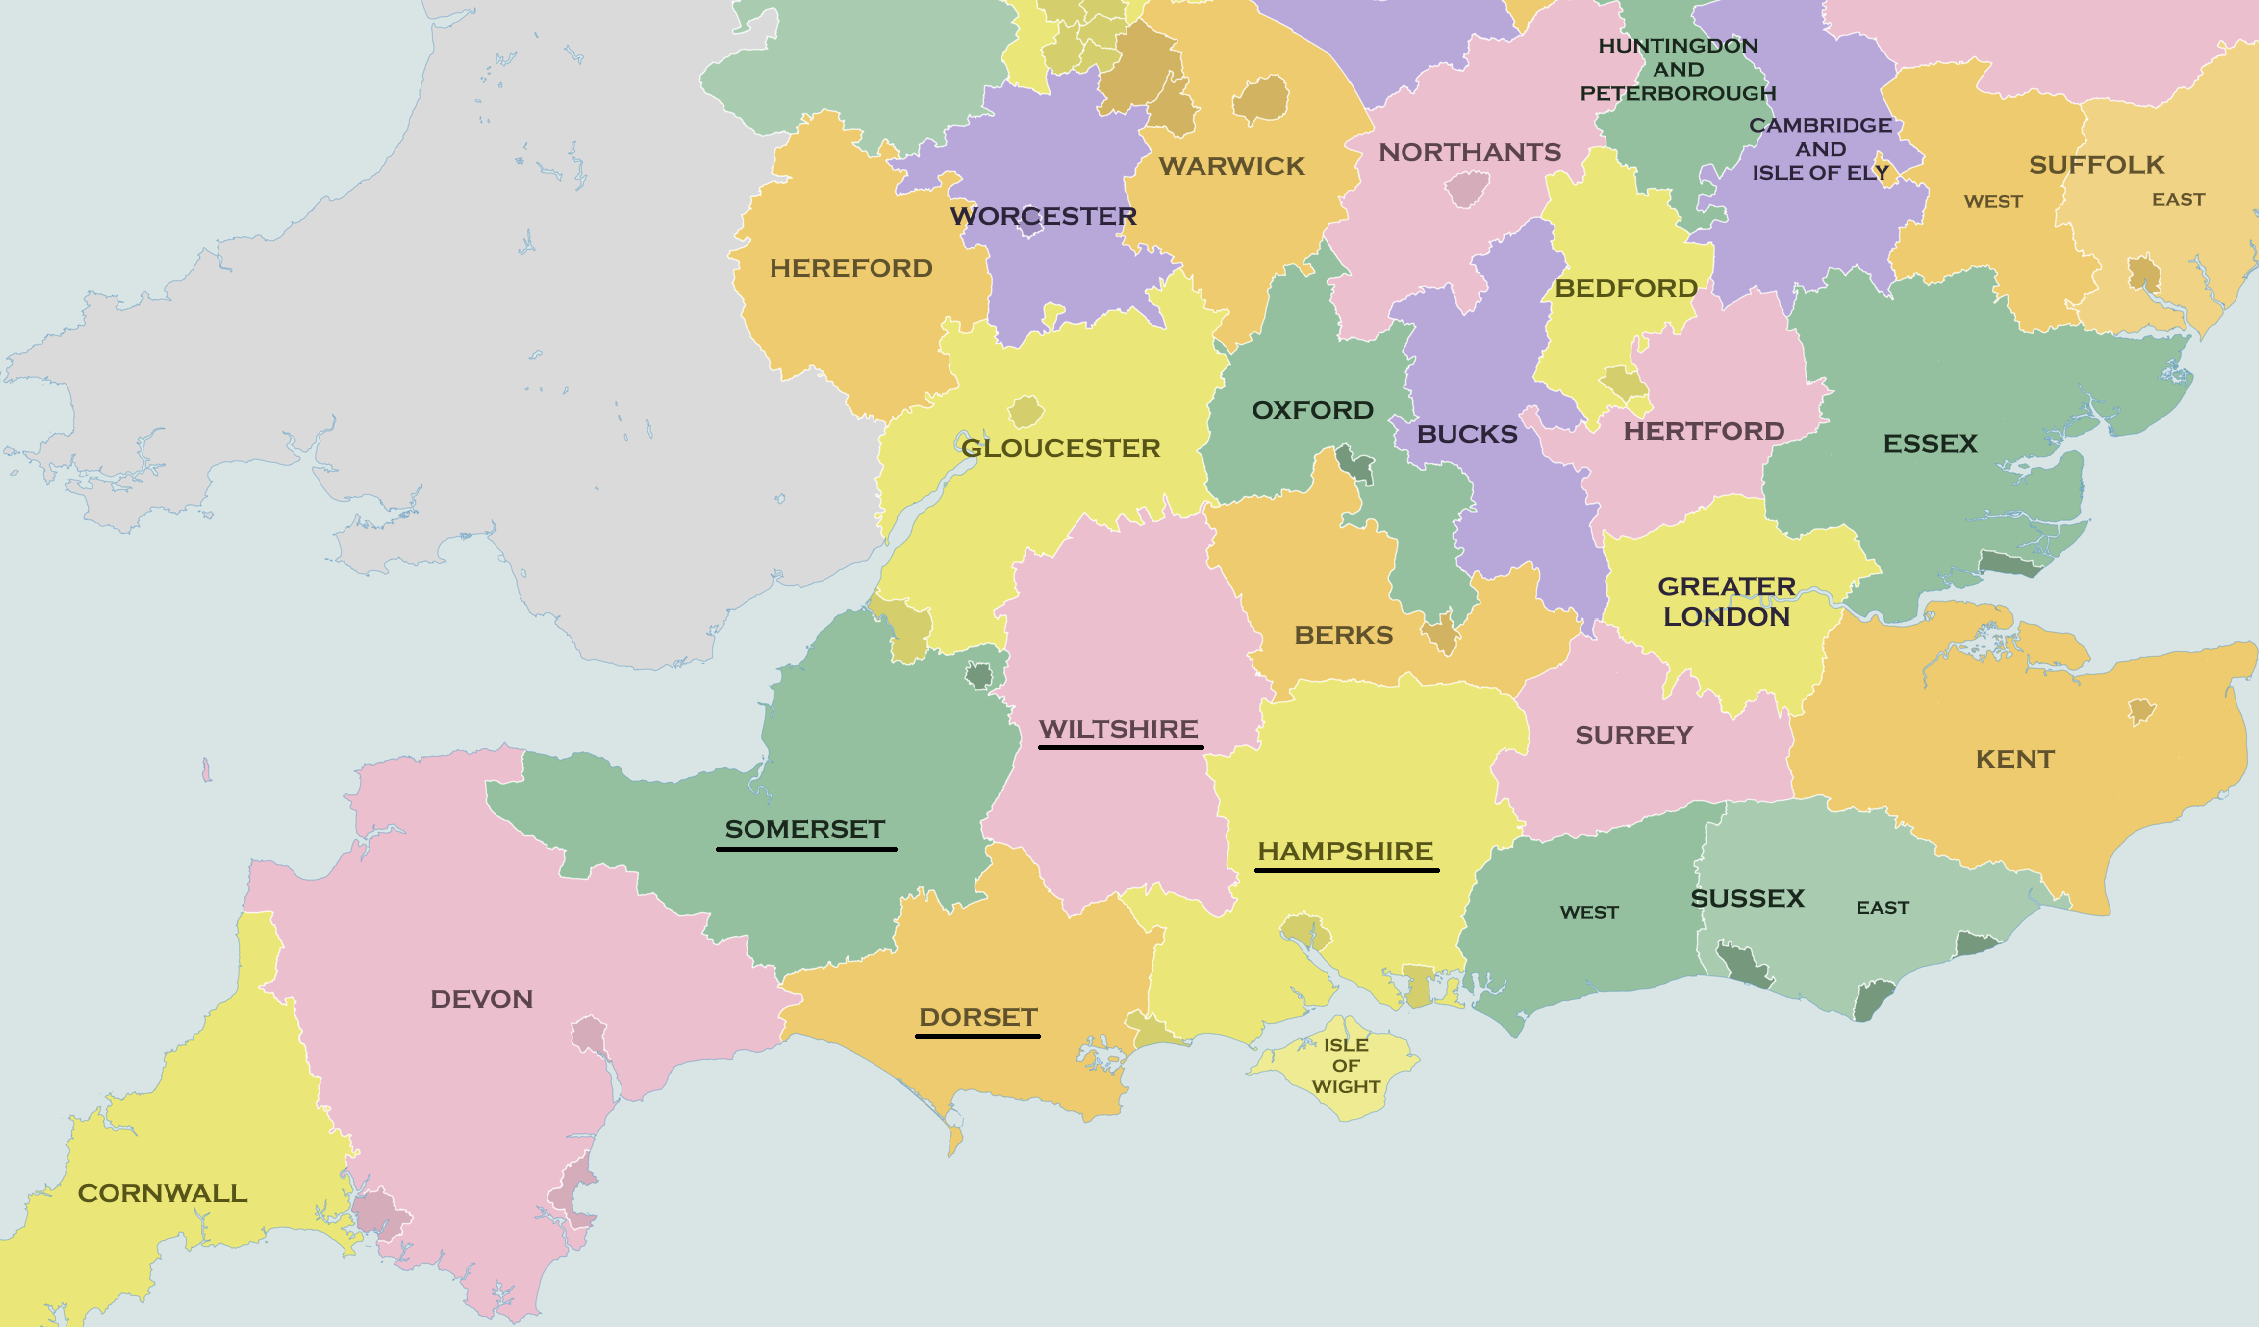 anglia megyéi térkép Thomas Hardy regényeinek színhelye, Wessex   Pangea anglia megyéi térkép